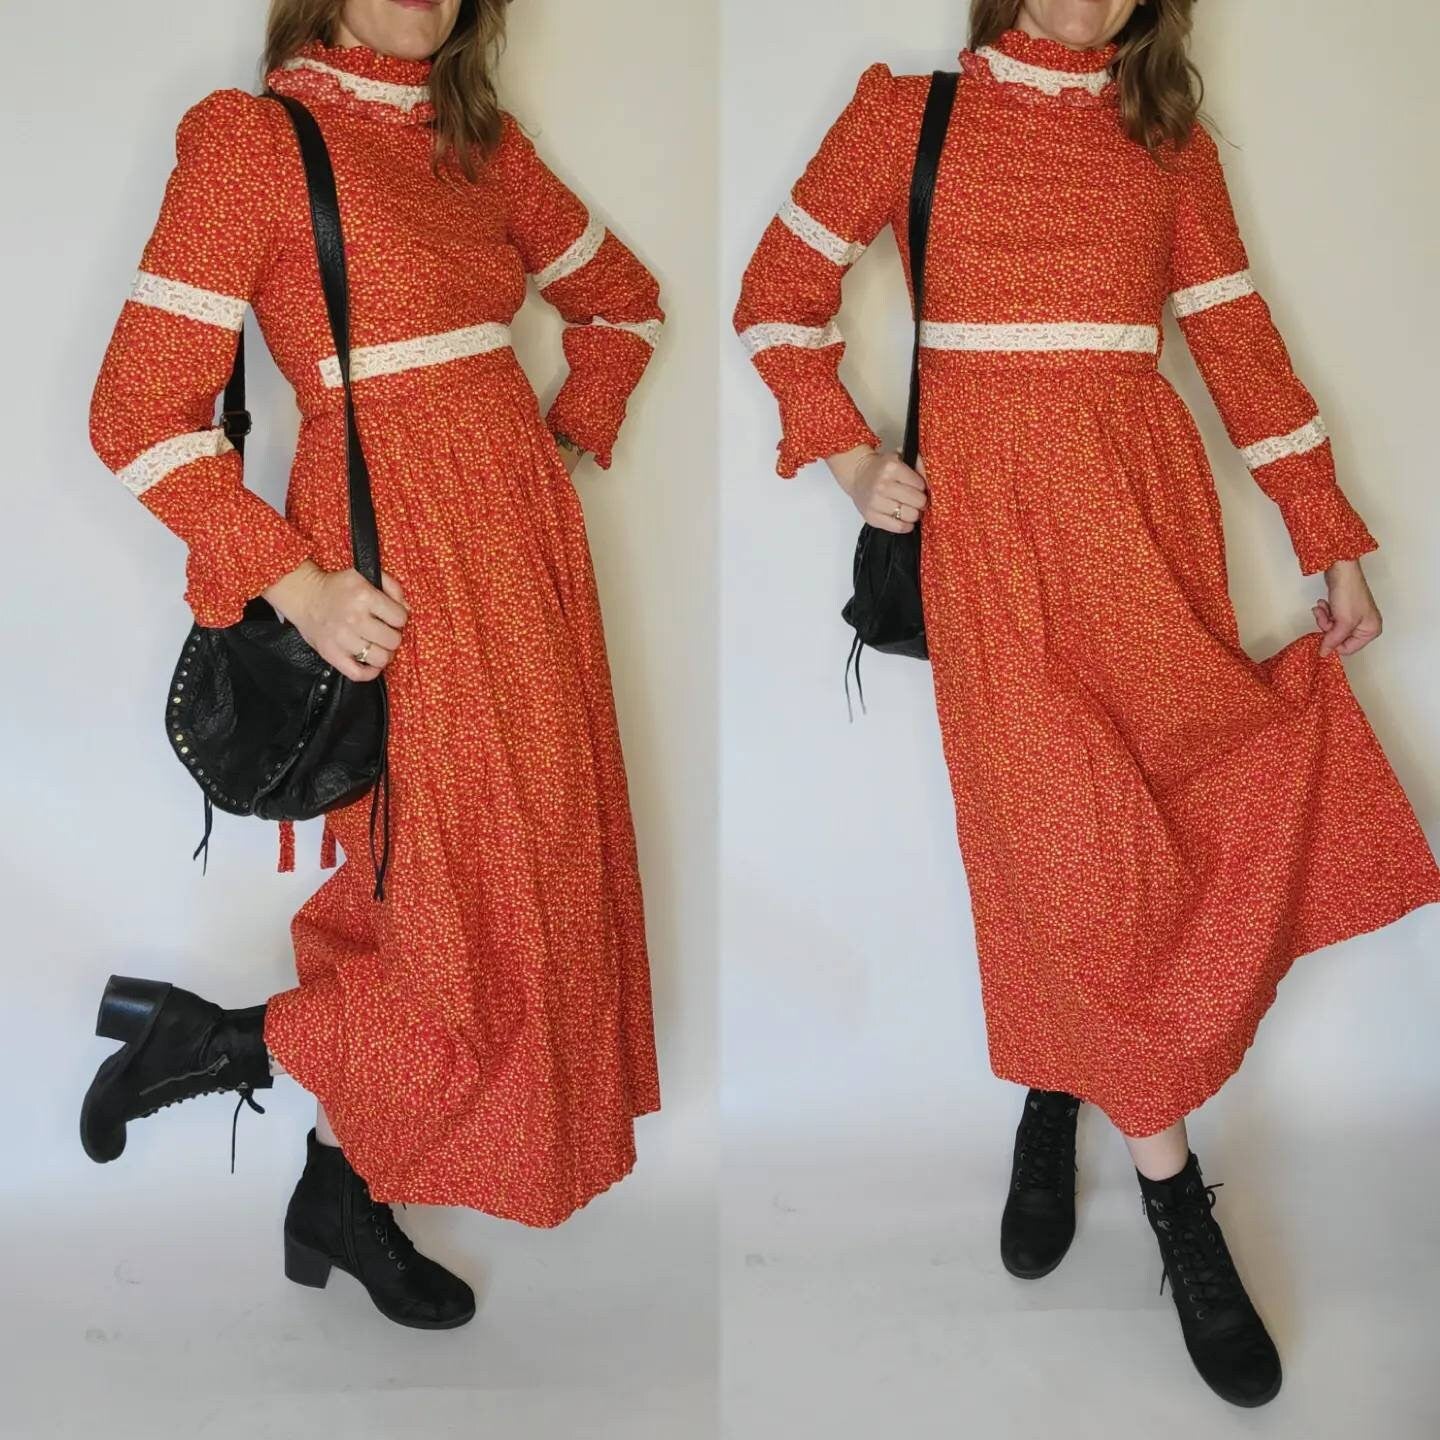 Vintage Gunne Sax inspired handmade dress